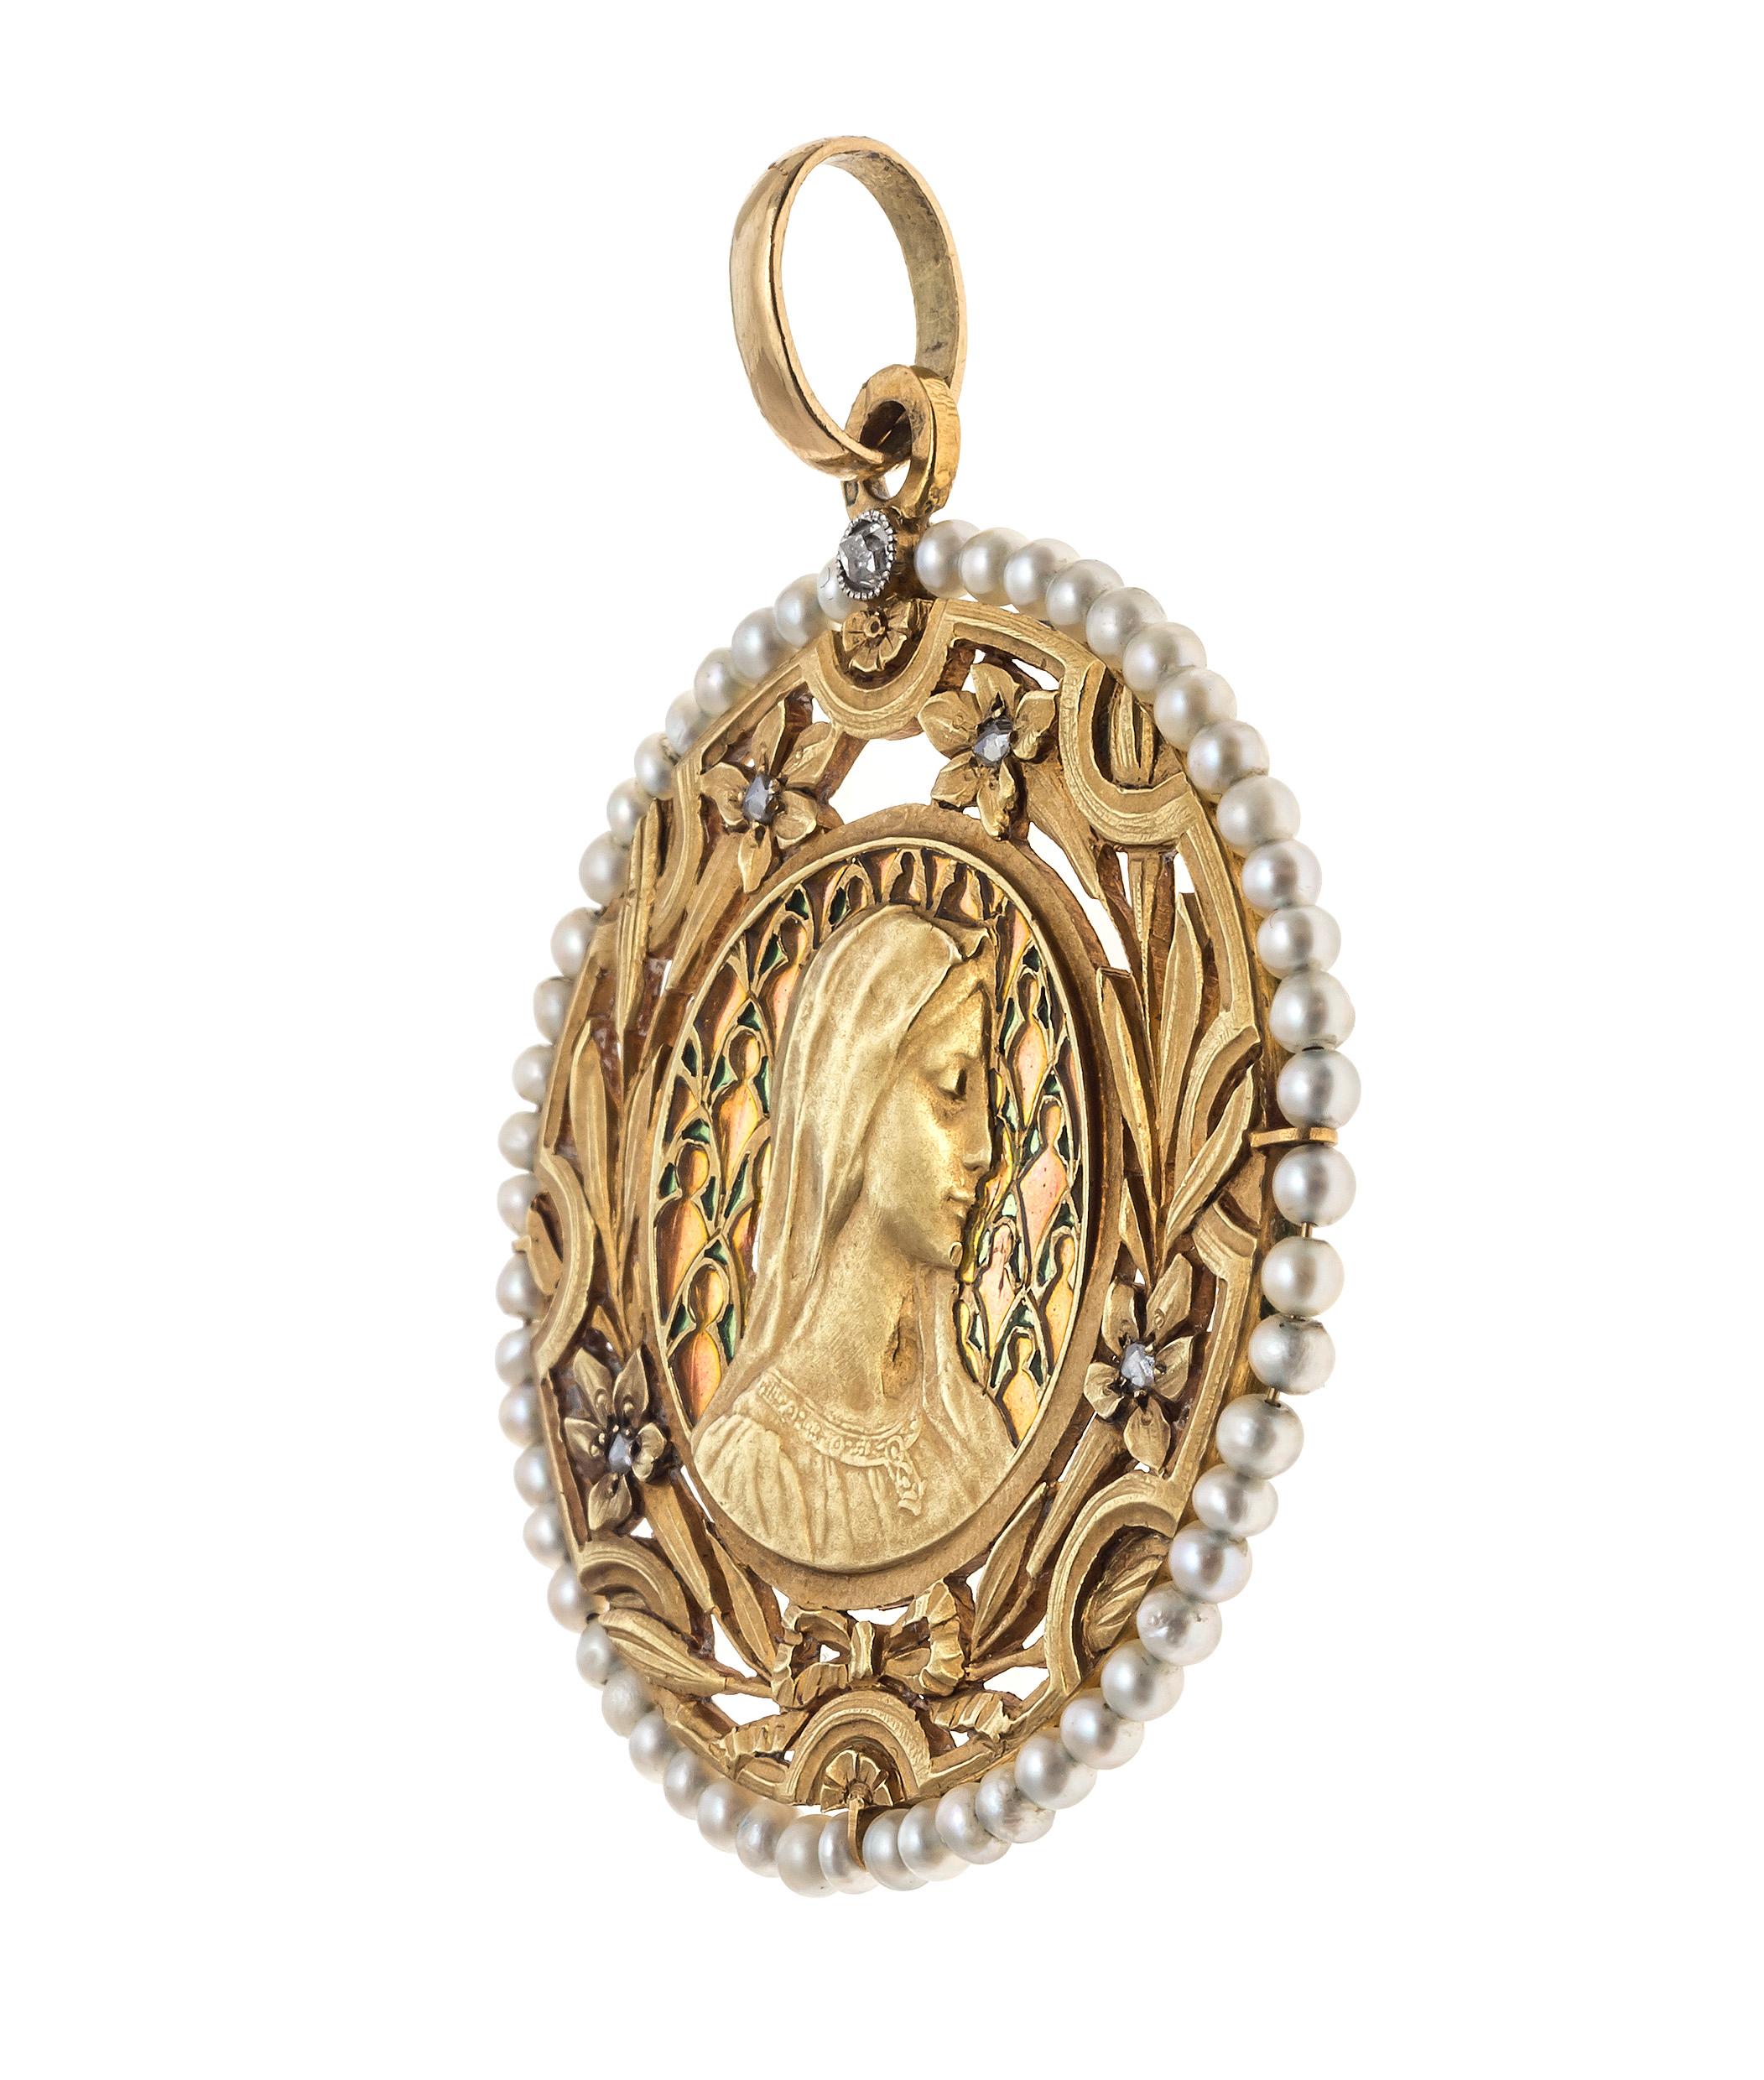 Ce beau pendentif Art Nouveau montre un portrait en relief de la Vierge Marie au milieu d'un fin halo d'émail plique à jour d'ornements verts devant un fond orange. L'image de Marie est entourée d'un cadre finement découpé, décoré d'une couronne